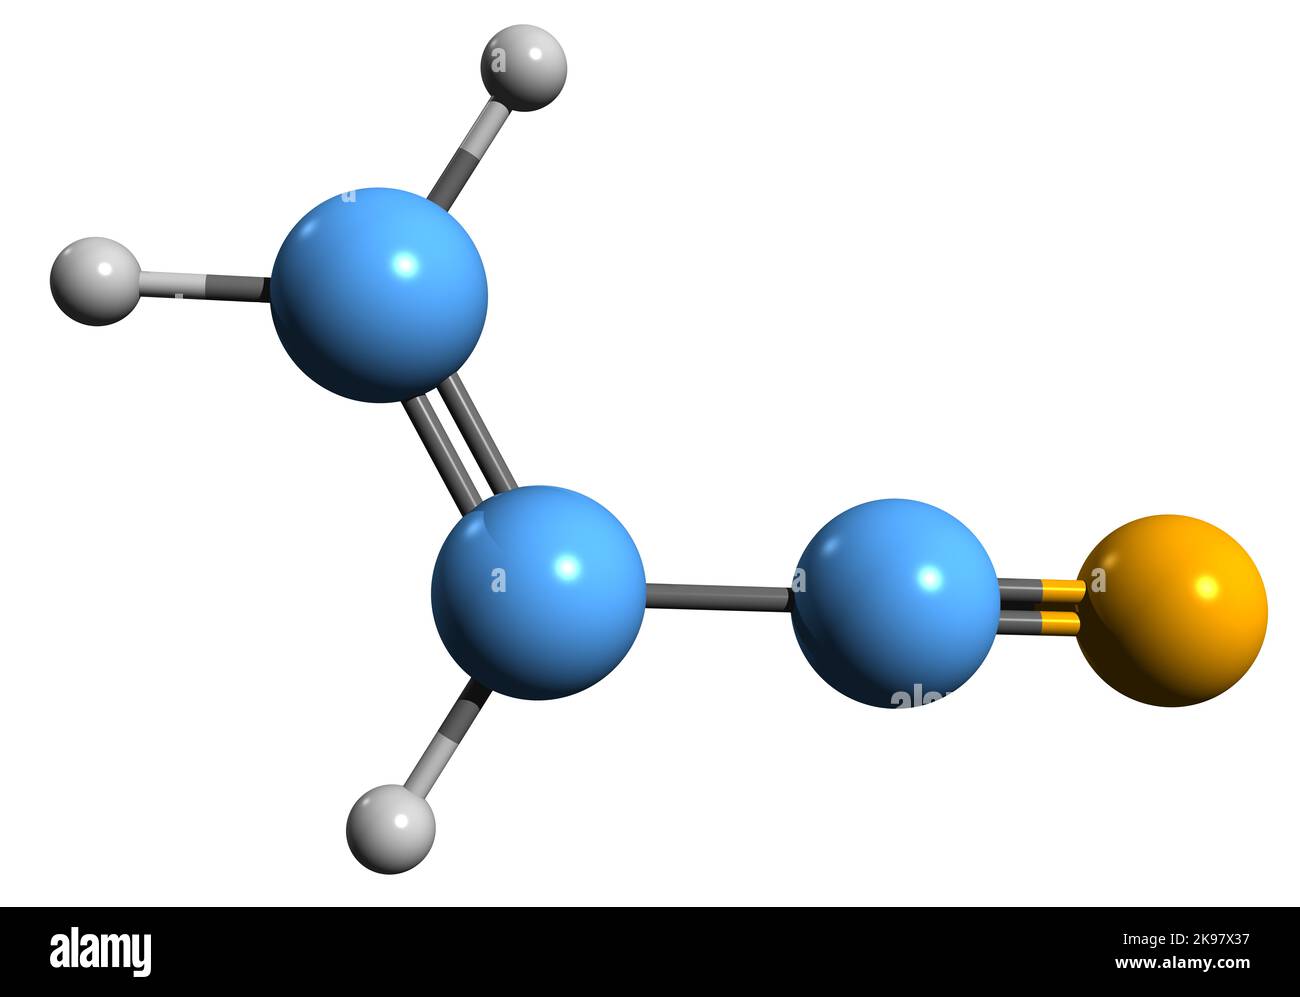 3D Bild der Skelettformel von Acrylnitril - molekularchemische Struktur der organischen Verbindung Cyanoethen auf weißem Hintergrund isoliert Stockfoto